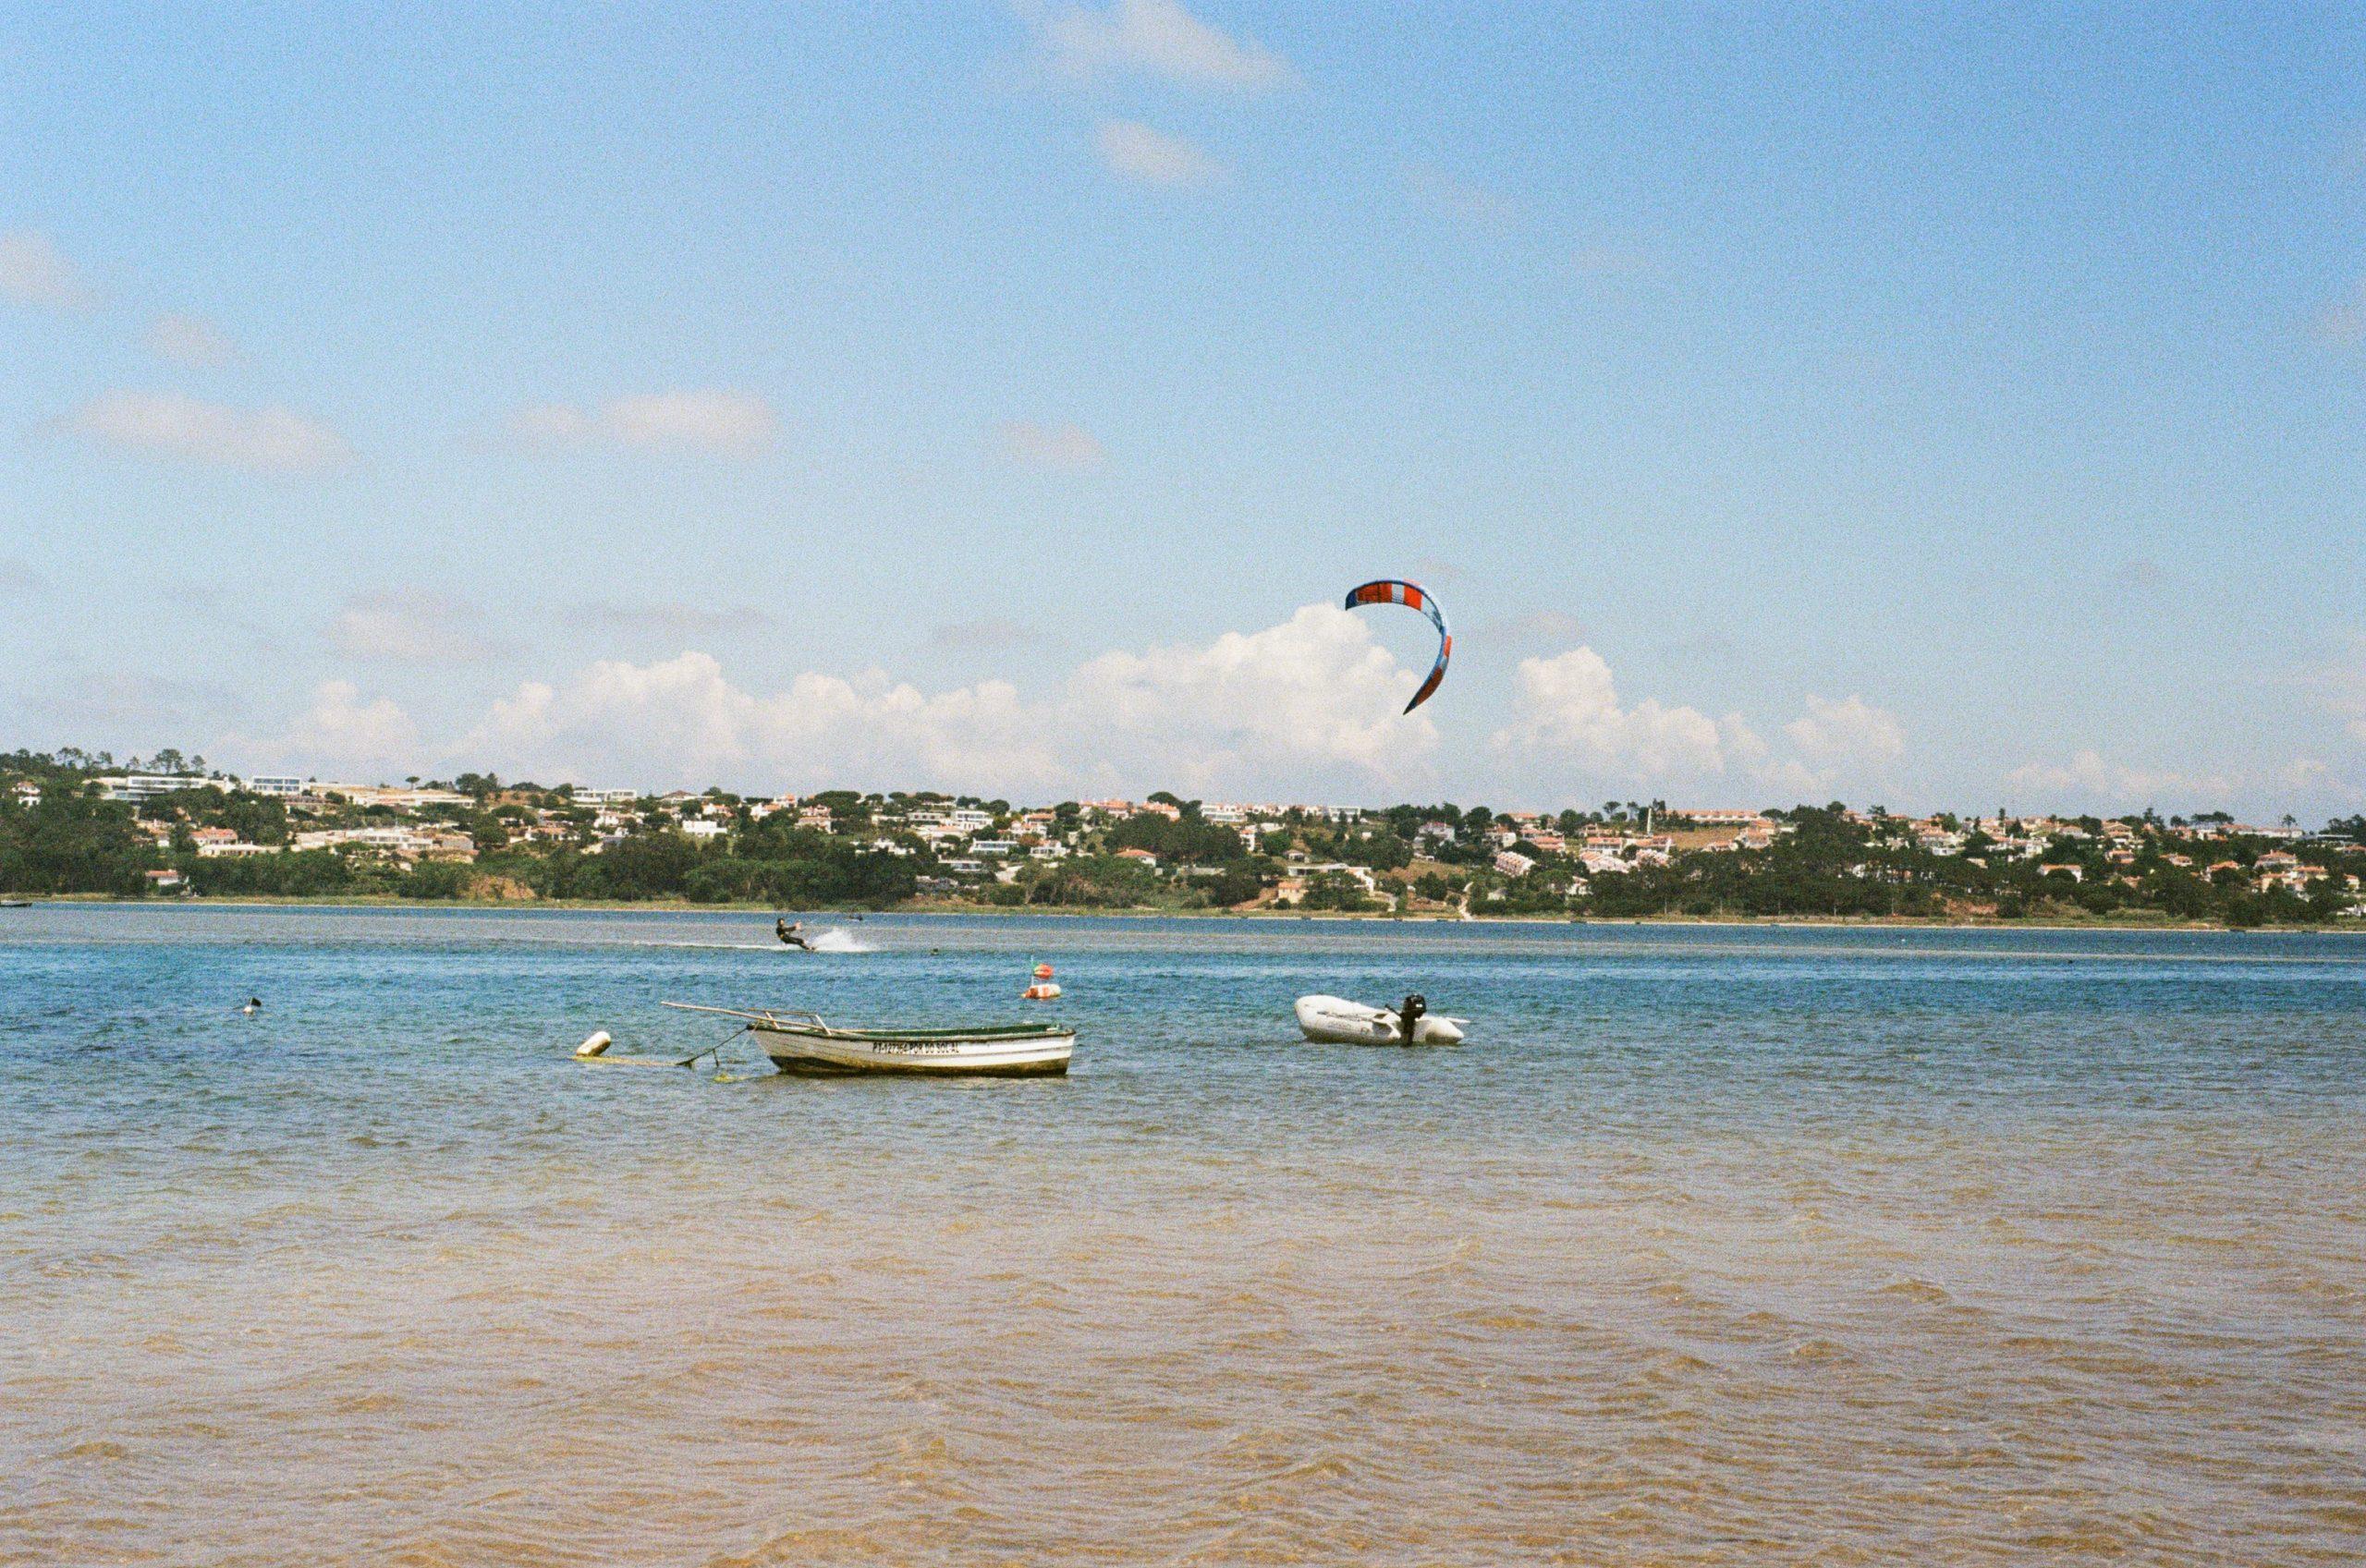 Photo argentique de la lagune d'obidos. Un kitesurfeur navigue sur le spot, deux petites embarcations sont devant lui.